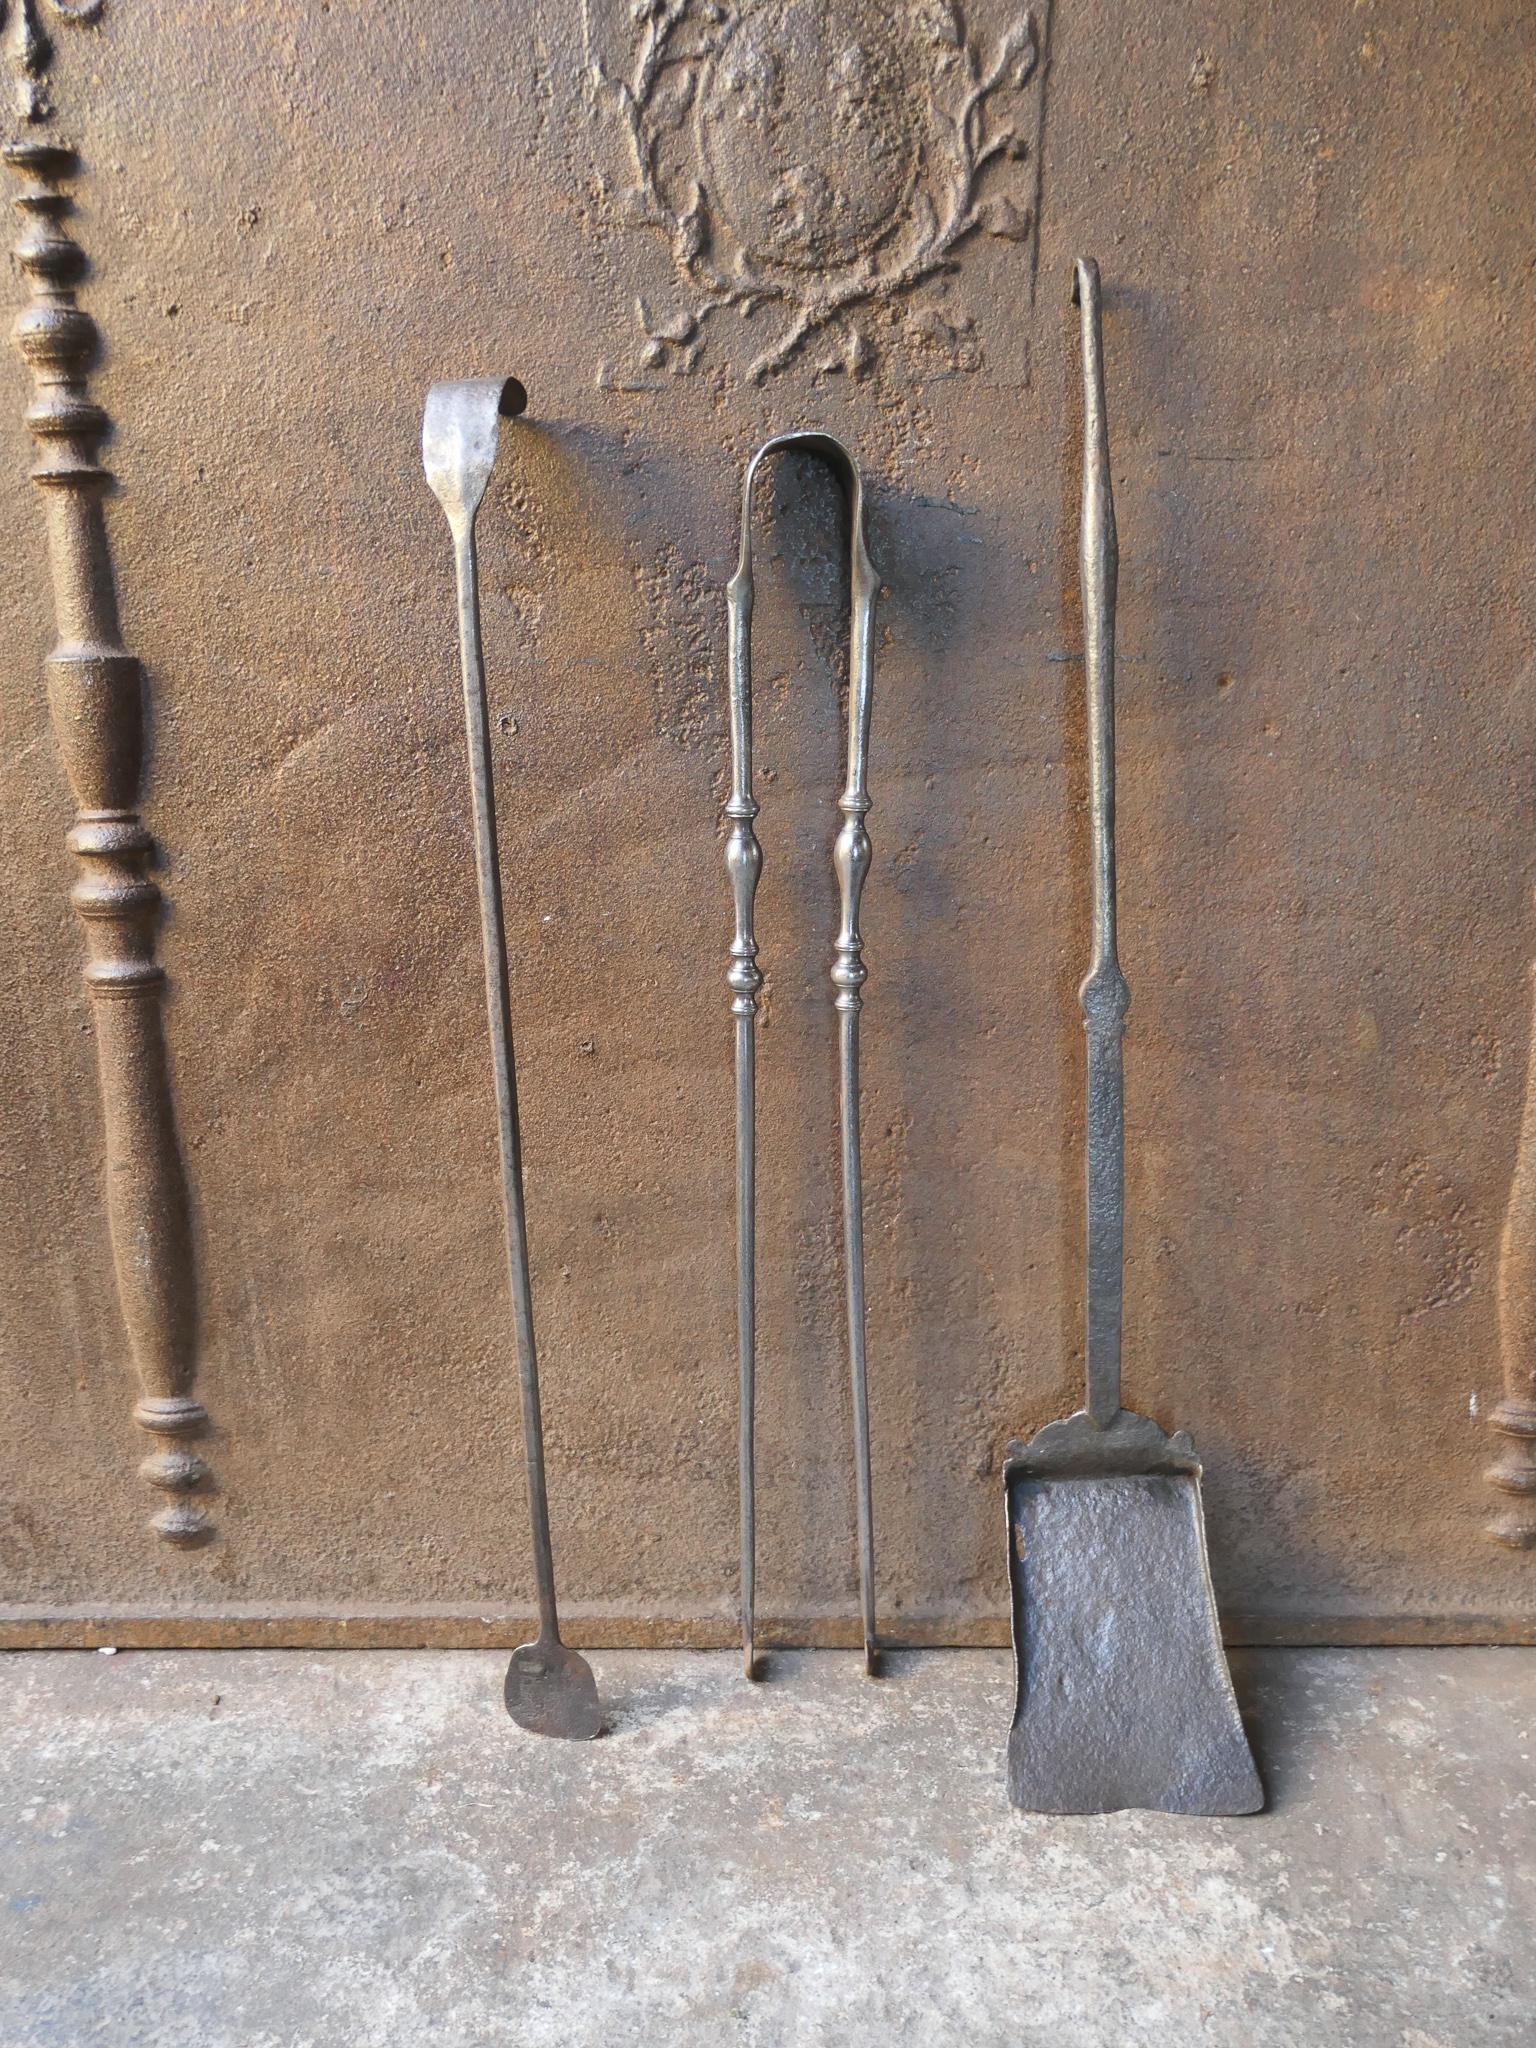 Ensemble de compagnons de cheminée d'époque Louis XV, datant du 18e siècle. Le jeu d'outils comprend une pince, une pelle et un tisonnier. Fabriqué en fer forgé. Il est en bon état et fonctionne parfaitement.